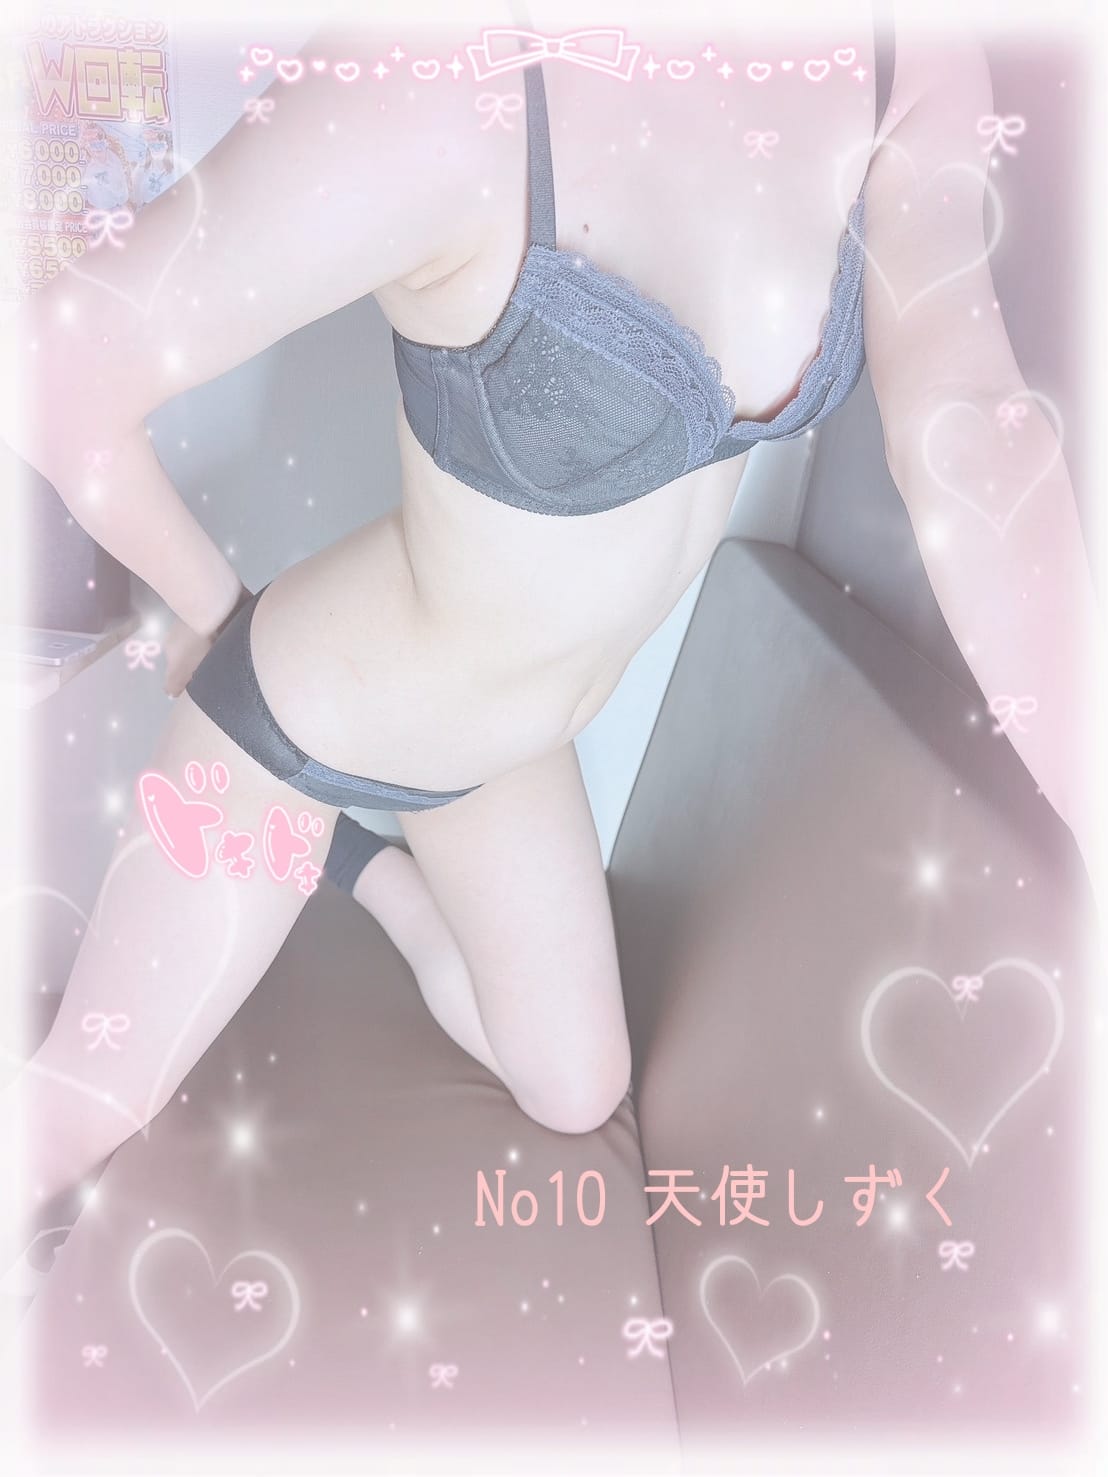 「No10 天使」06/22(土) 17:49 | No10 天使の写メ